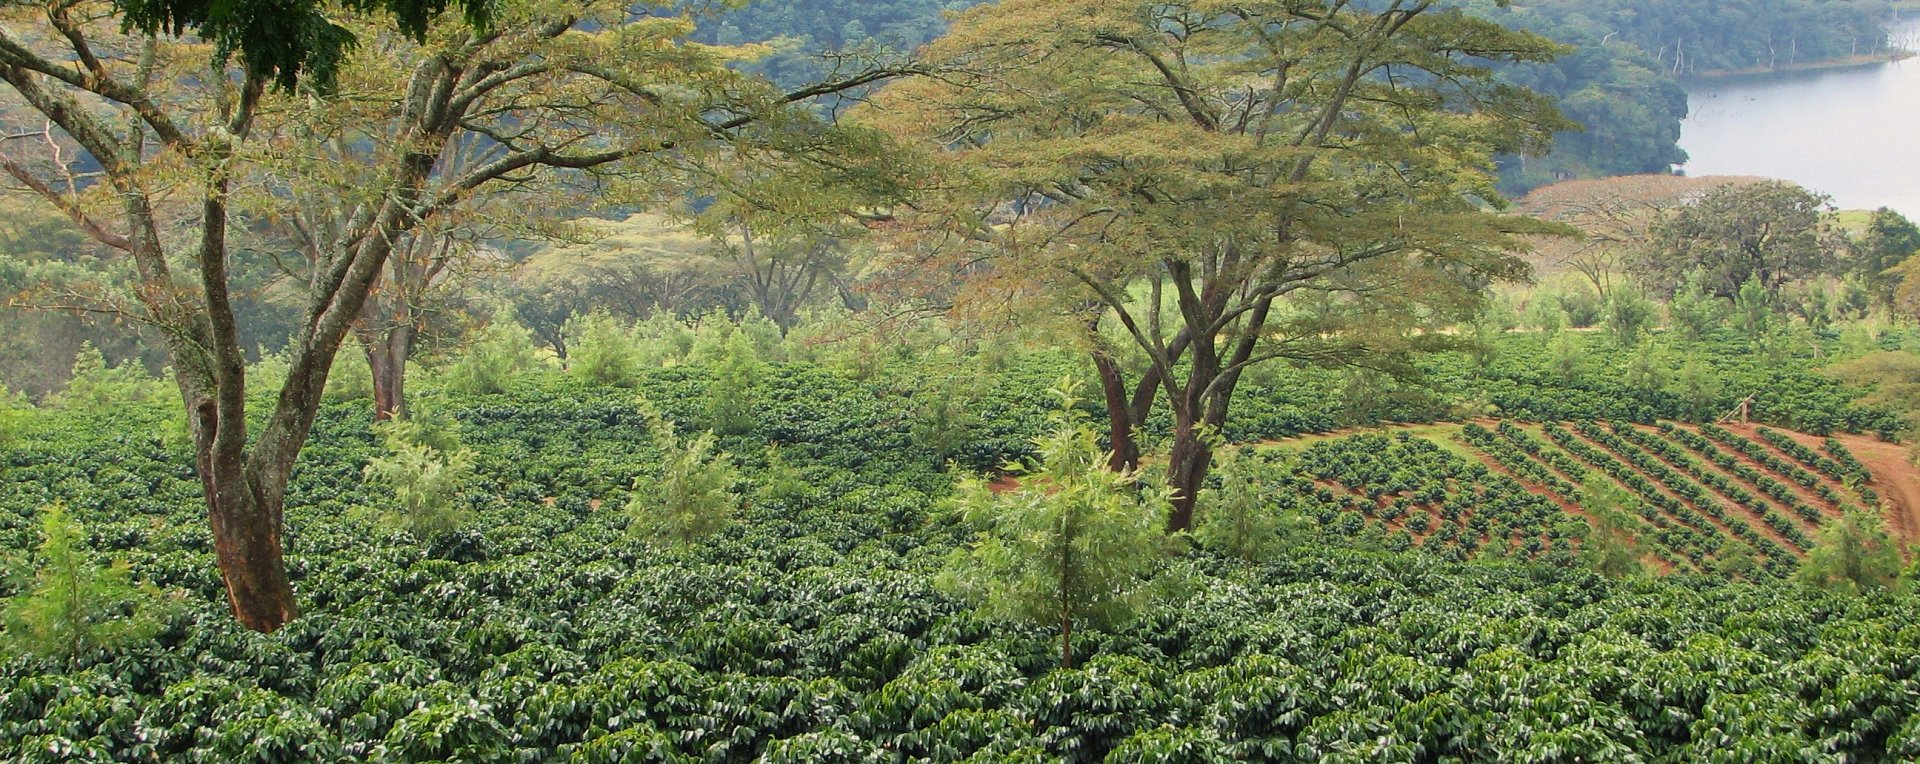 Zimbabwe Coffee Plantations